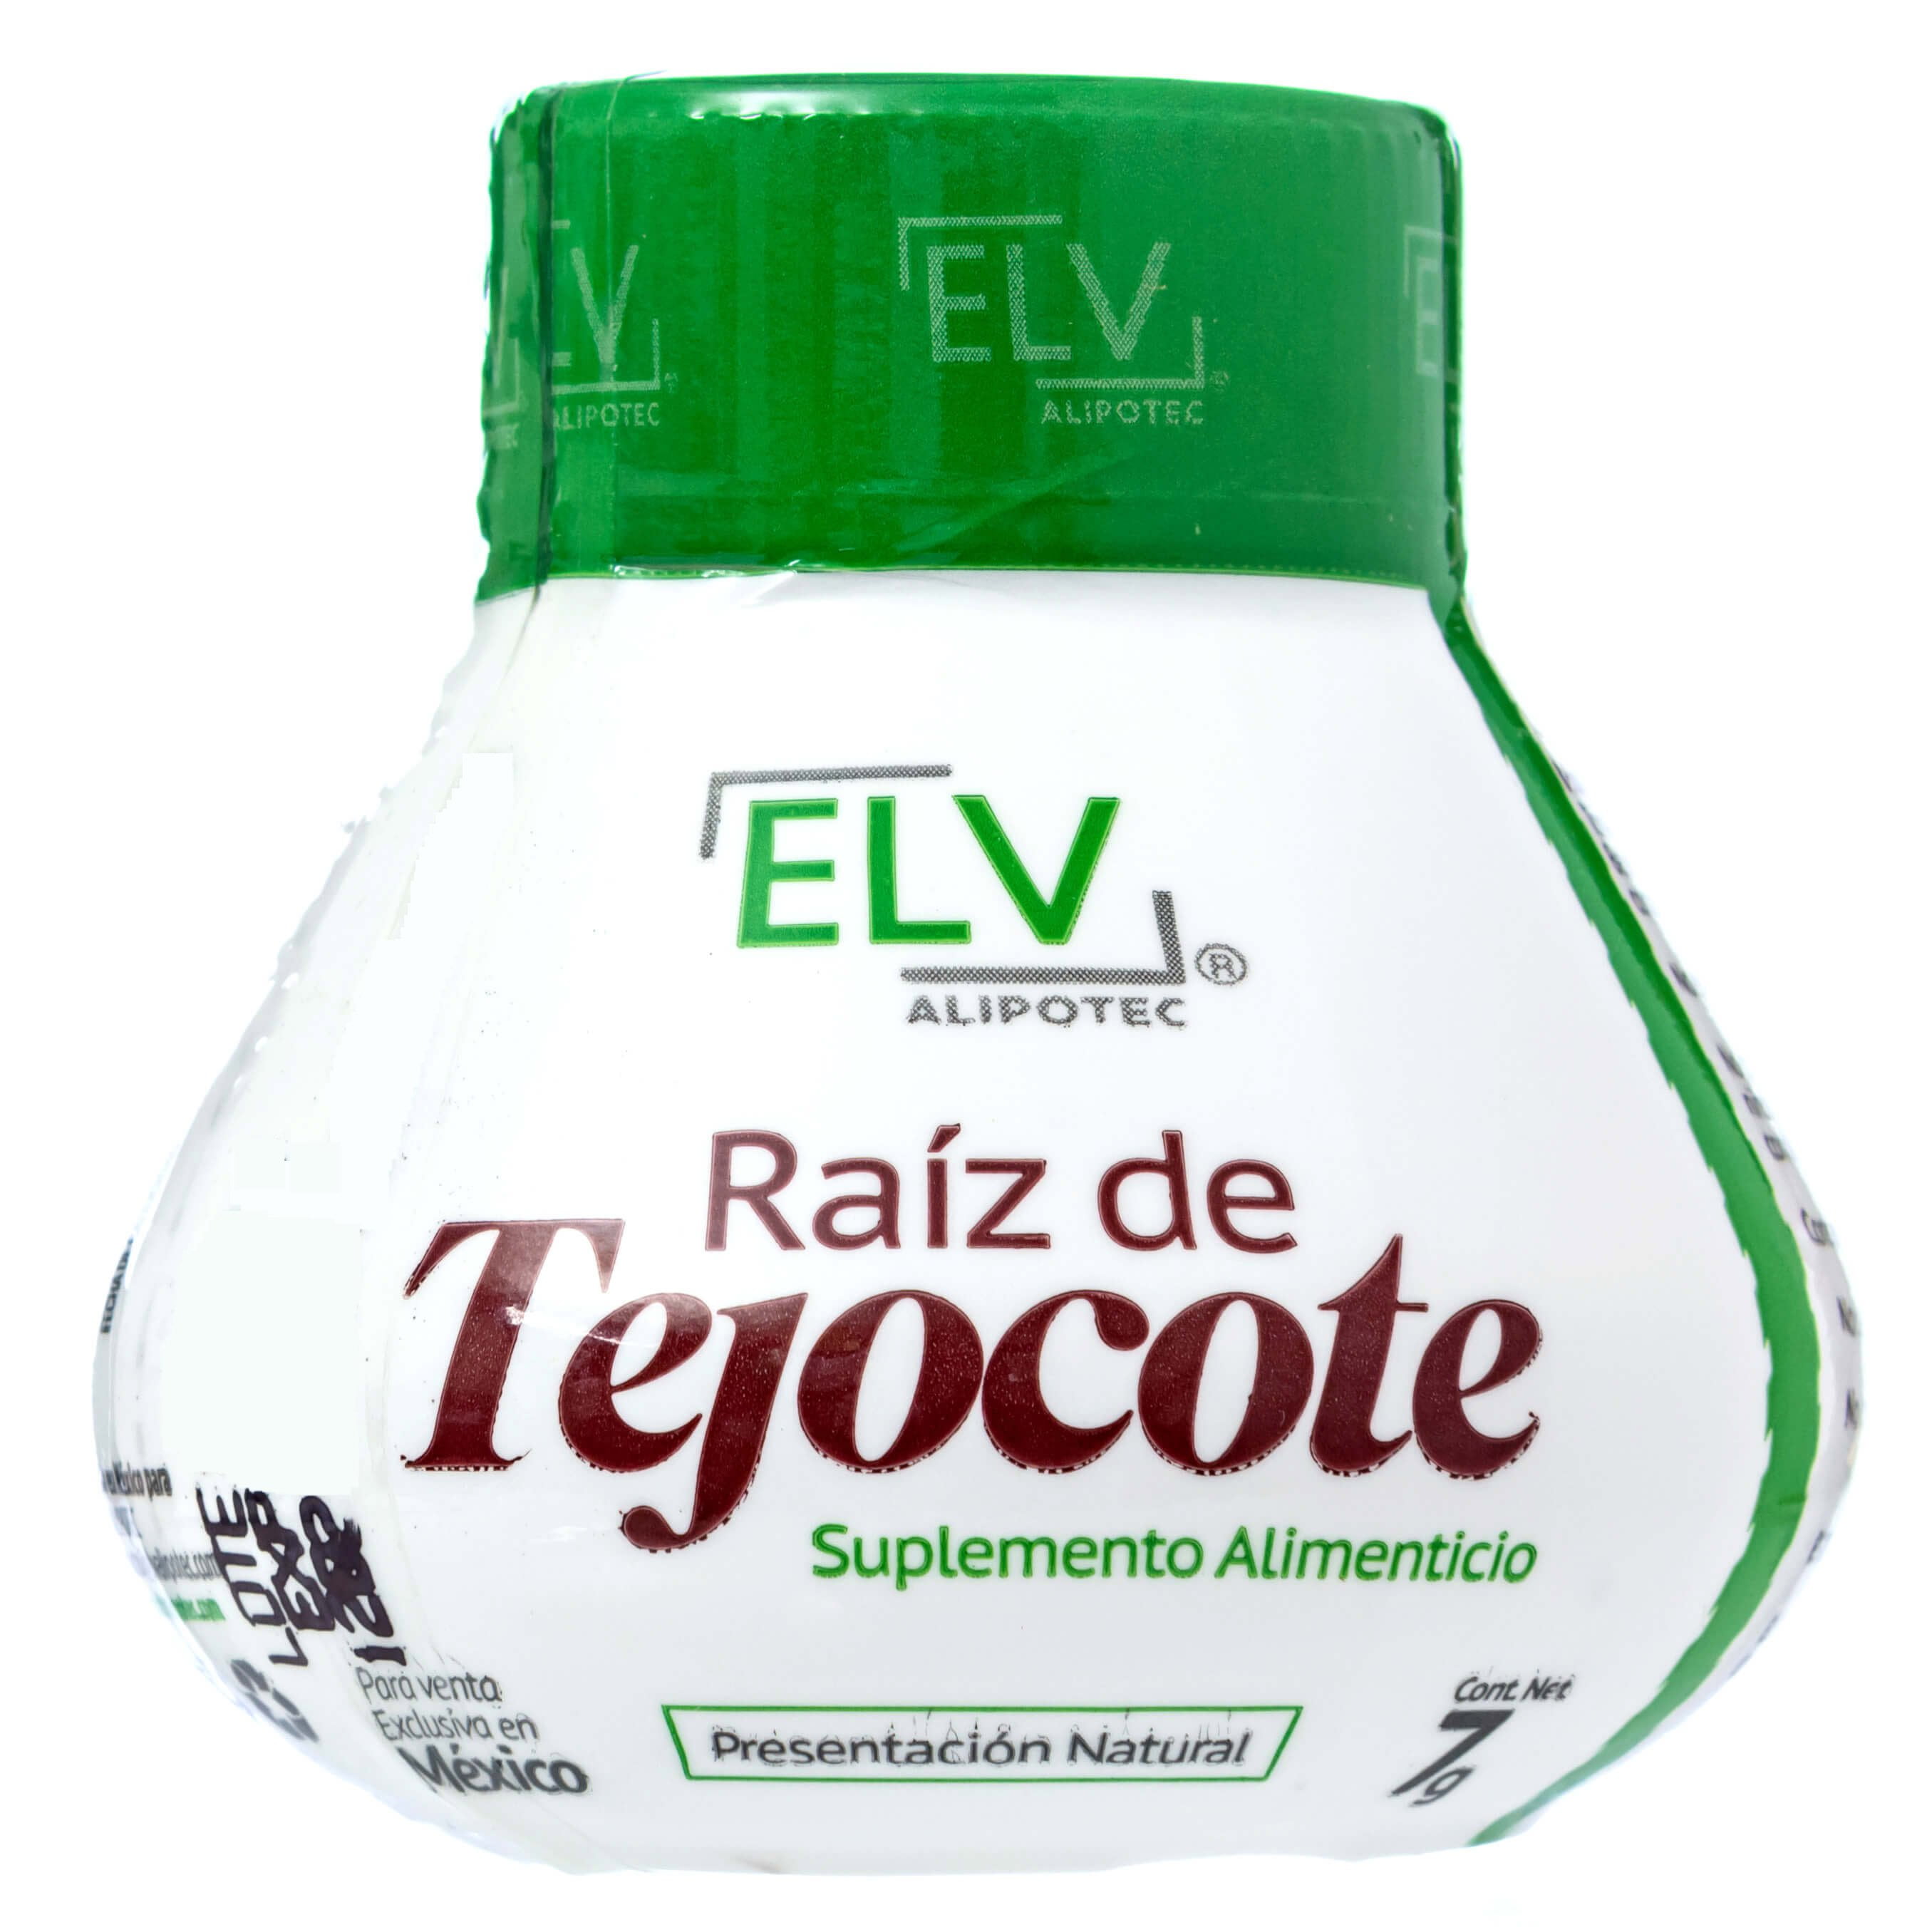 Elv Alipotec Raiz de Tejocote Root Supplement ELV Root - 90 Day Supply